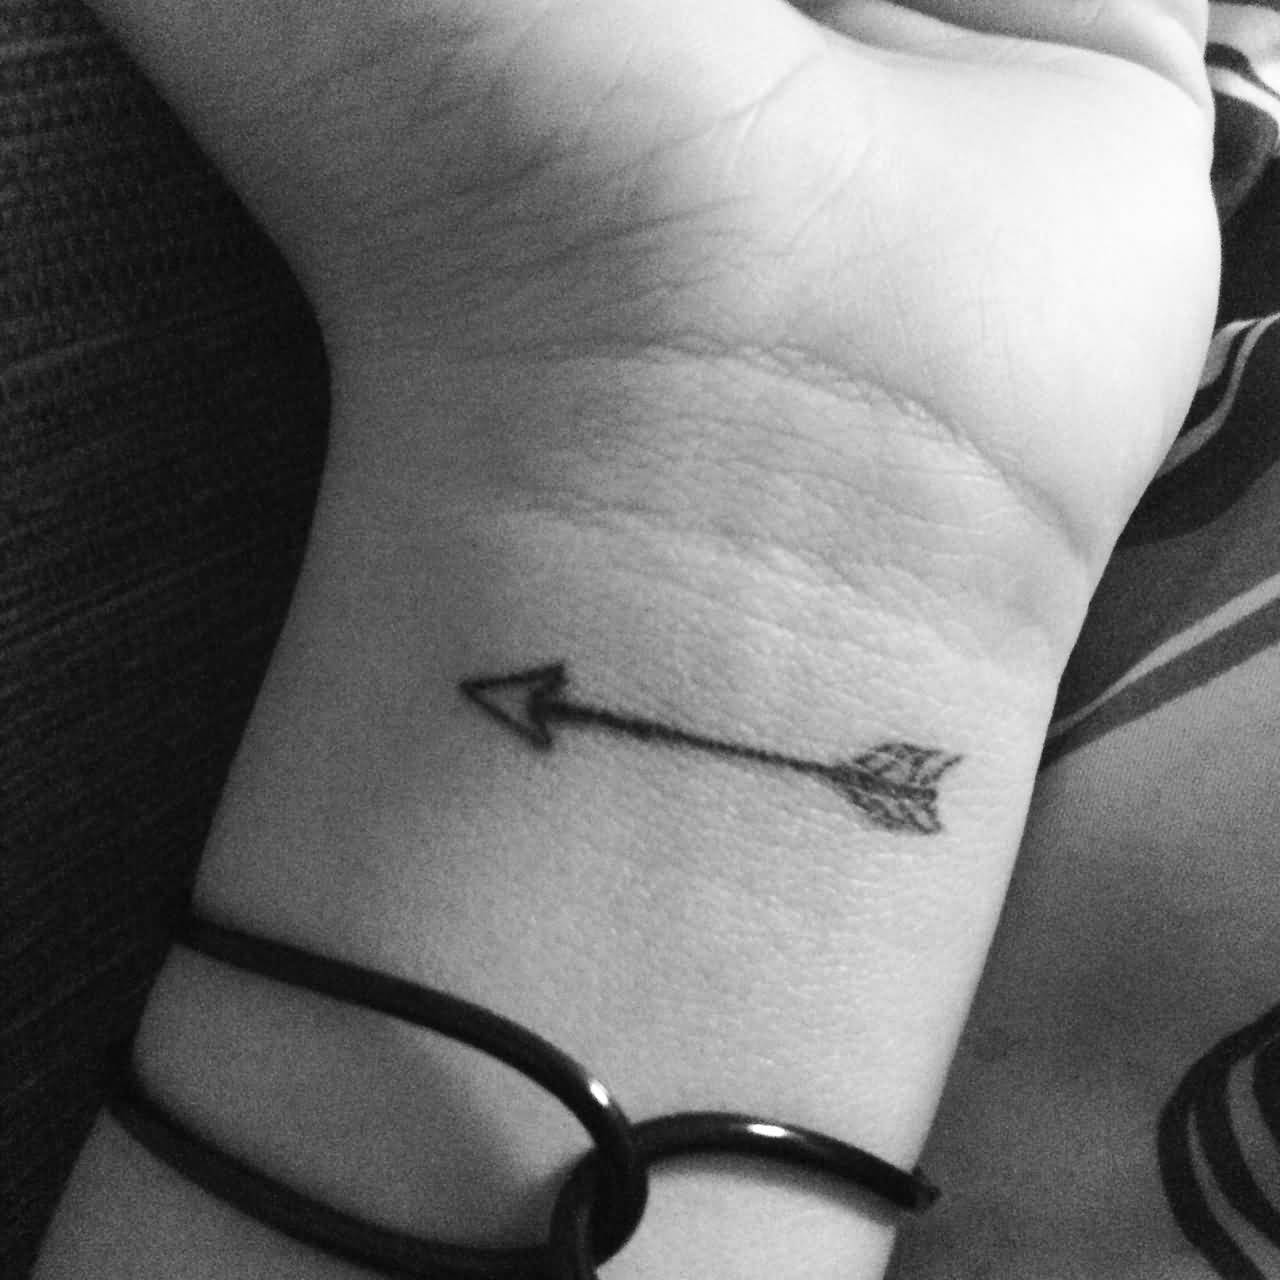 Simple Arrow Tattoo On Wrist